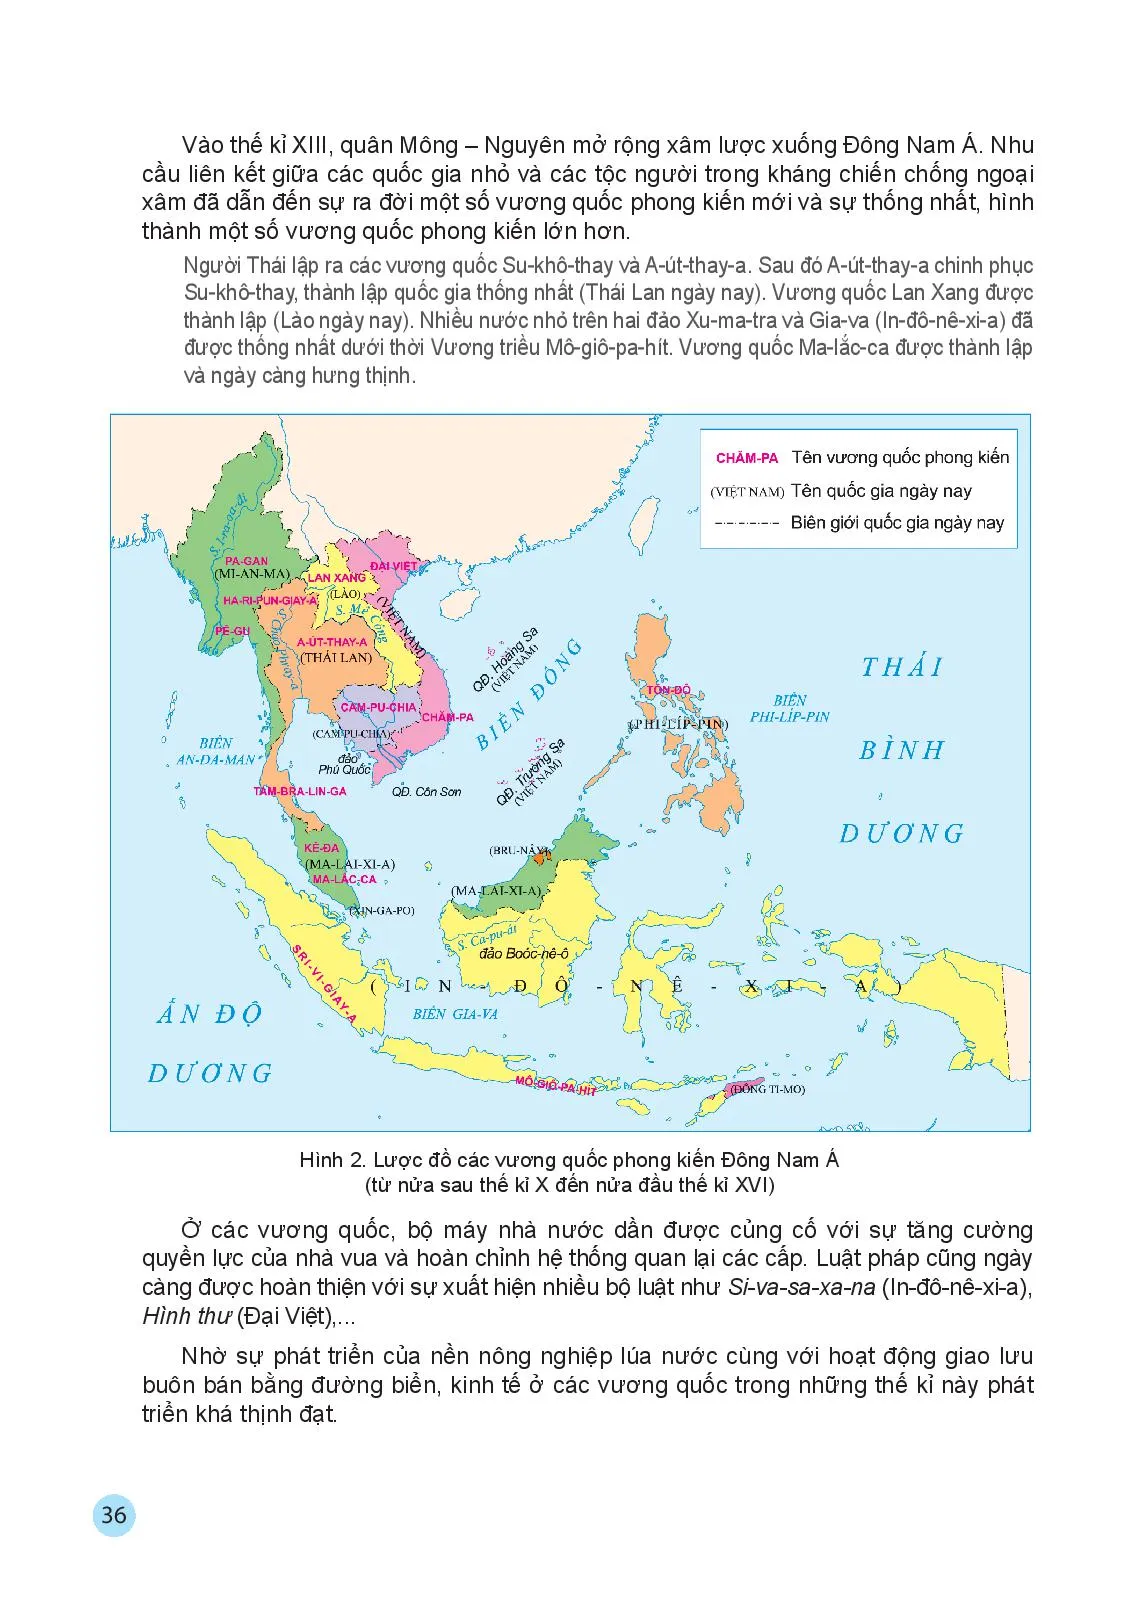 Bài 6 Các vương quốc phong kiến Đông Nam Á từ nửa sau thế kỉ X đến nửa đầu thế kỉ XVI